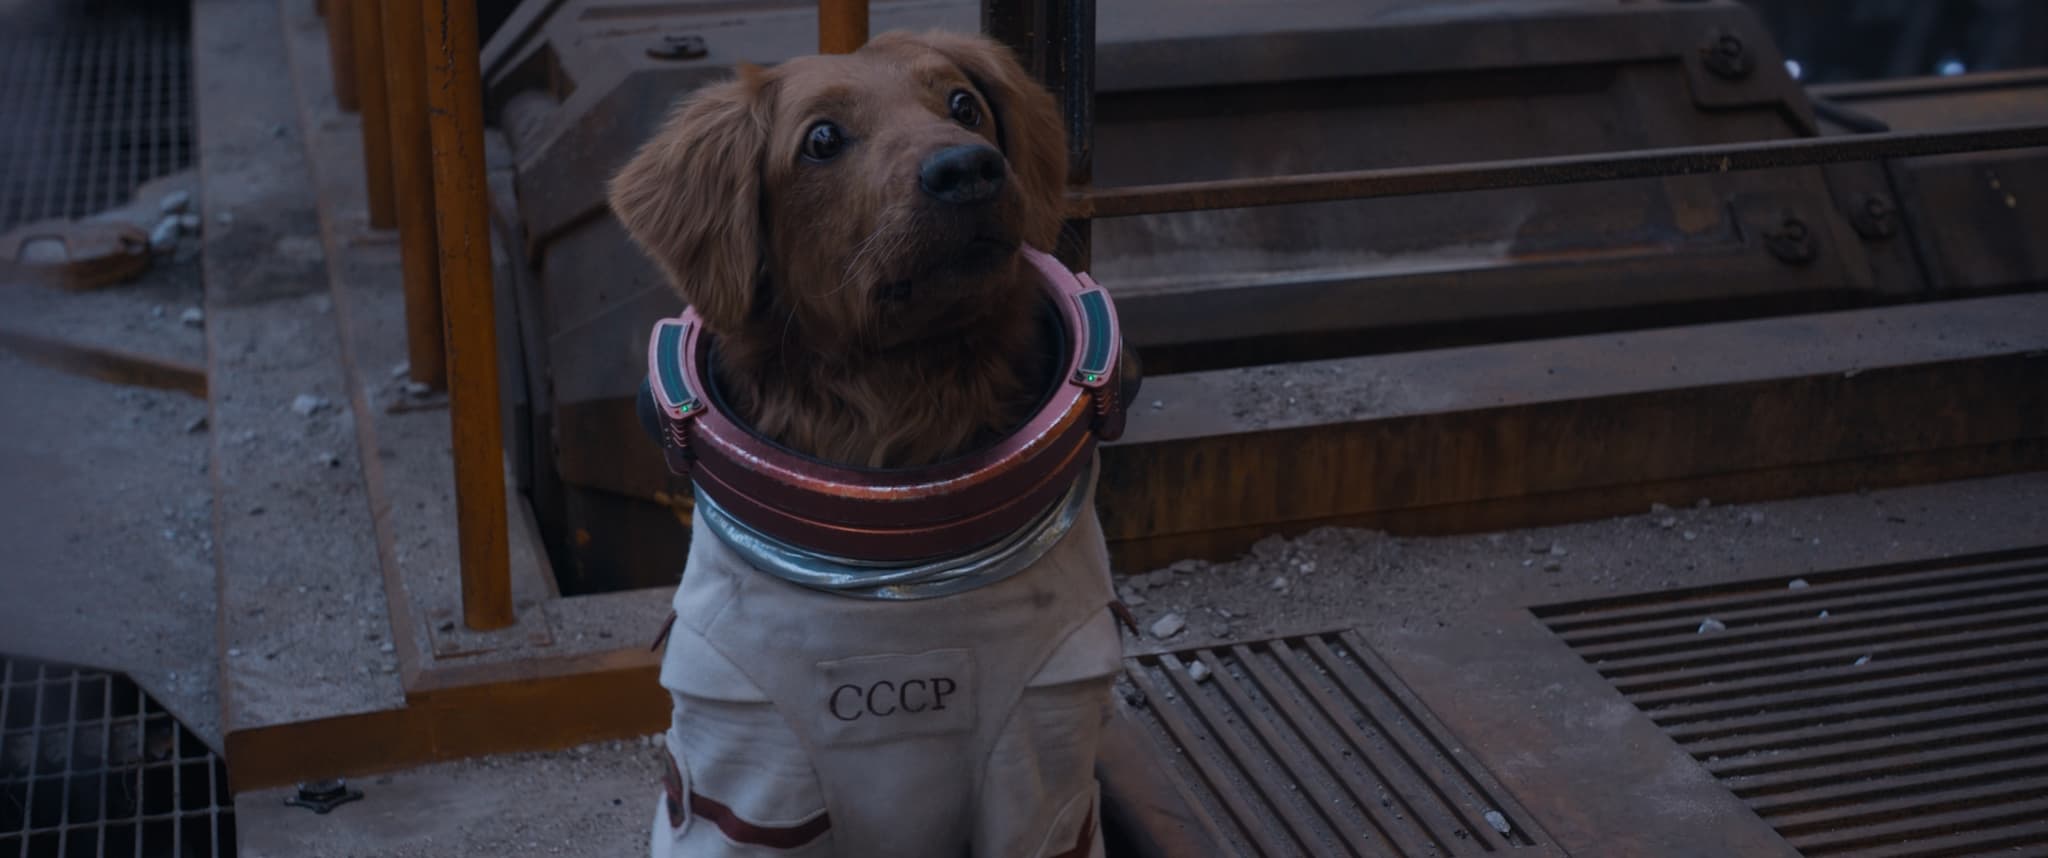 코스모 : 소련에서 우주실험으로 보내진 강쥐로 염력이 대한함 (출처: Marvel)